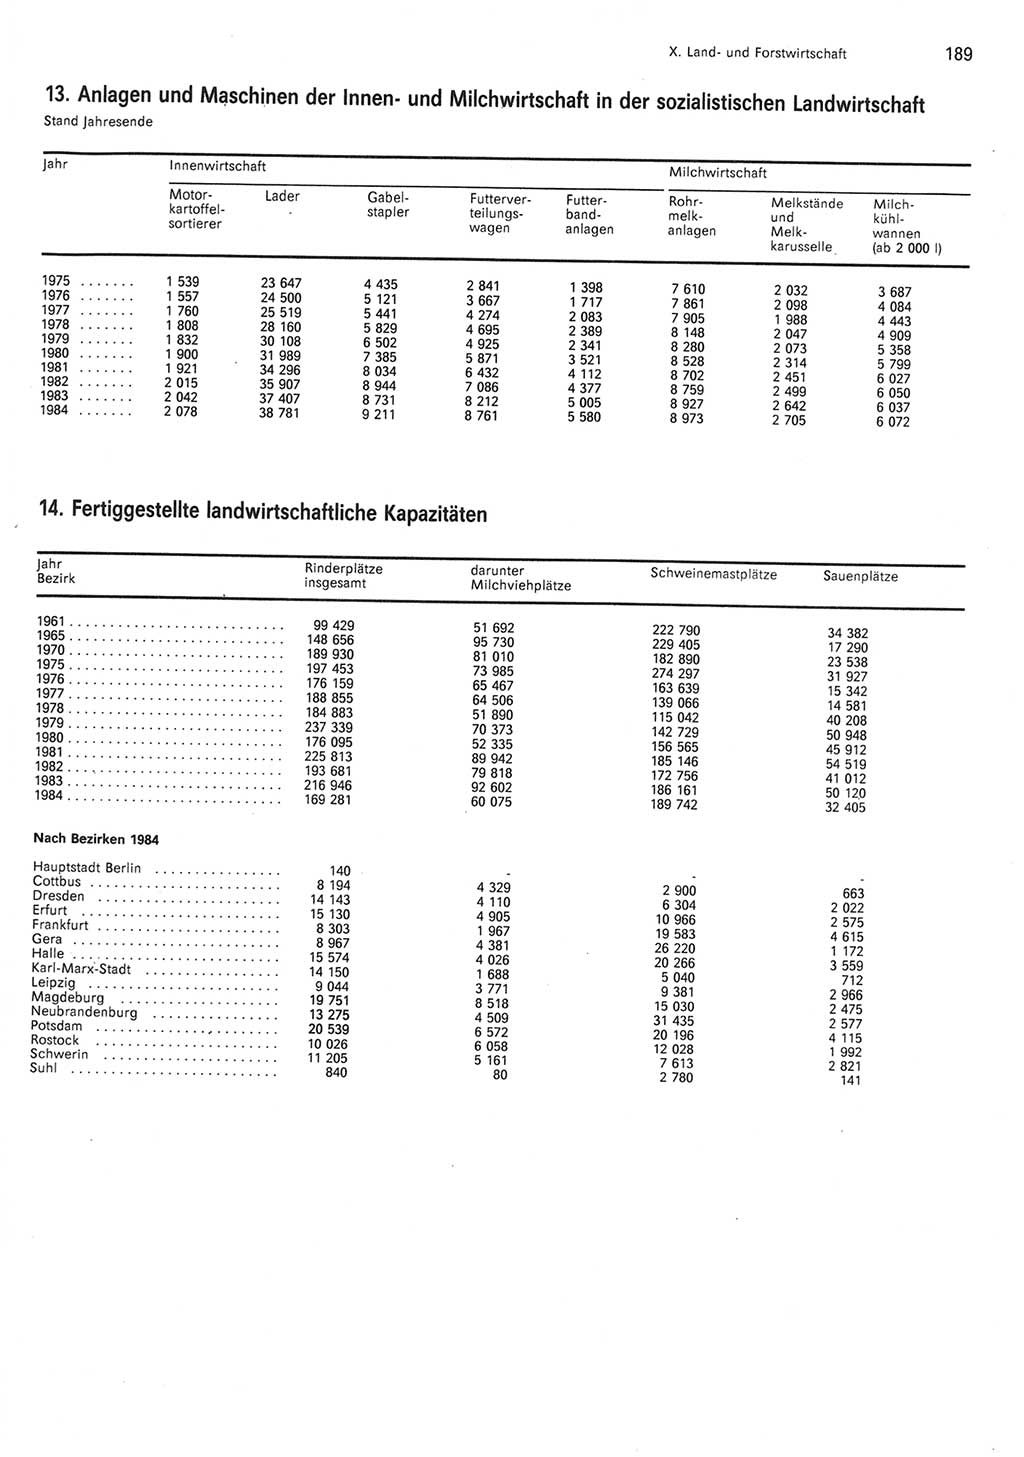 Statistisches Jahrbuch der Deutschen Demokratischen Republik (DDR) 1985, Seite 189 (Stat. Jb. DDR 1985, S. 189)